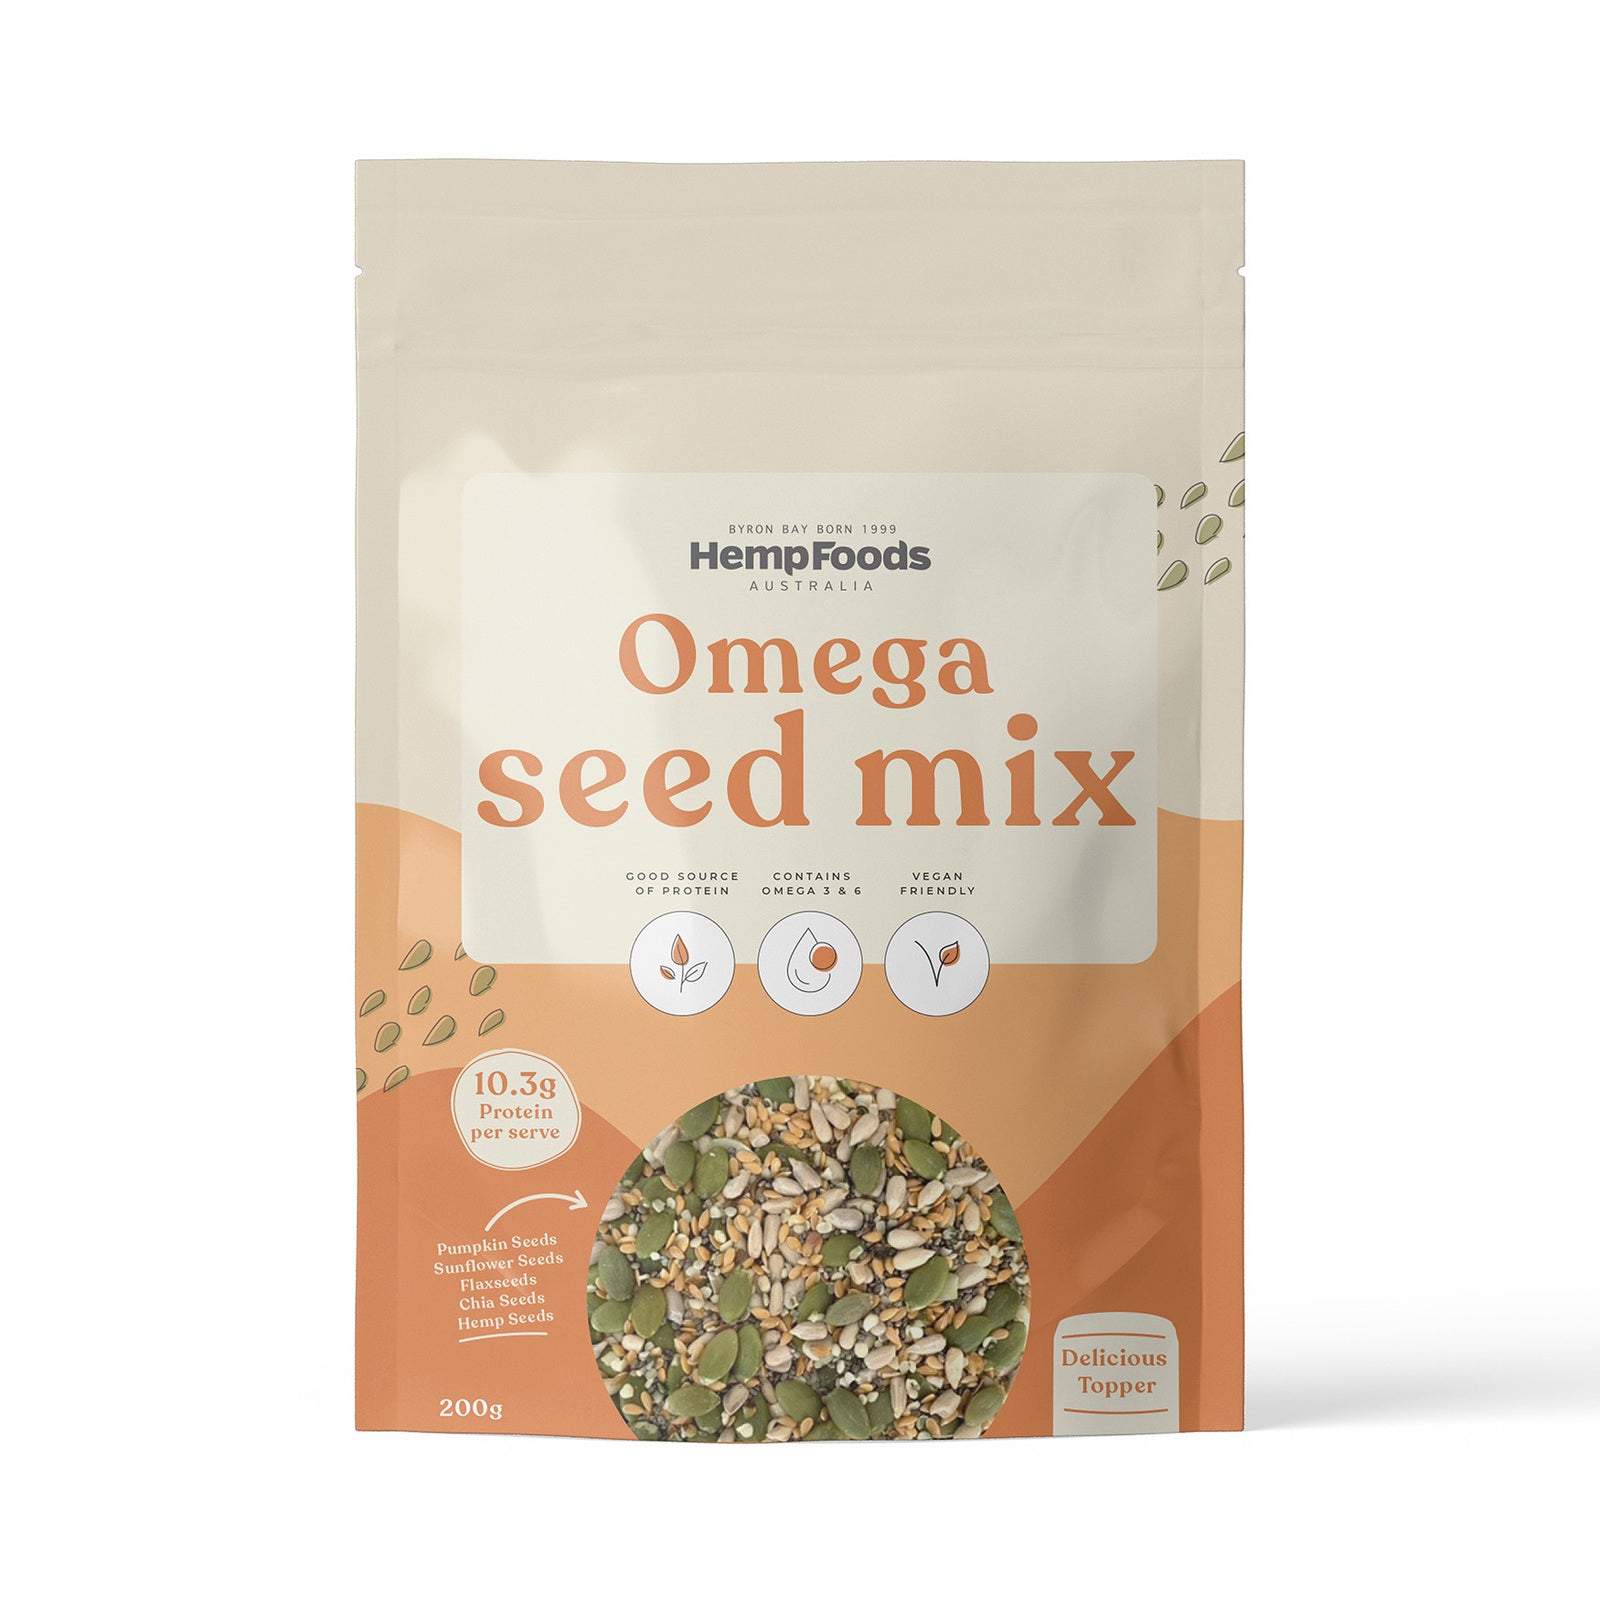 Hemp Foods Australia Omega Seed Mix 180g